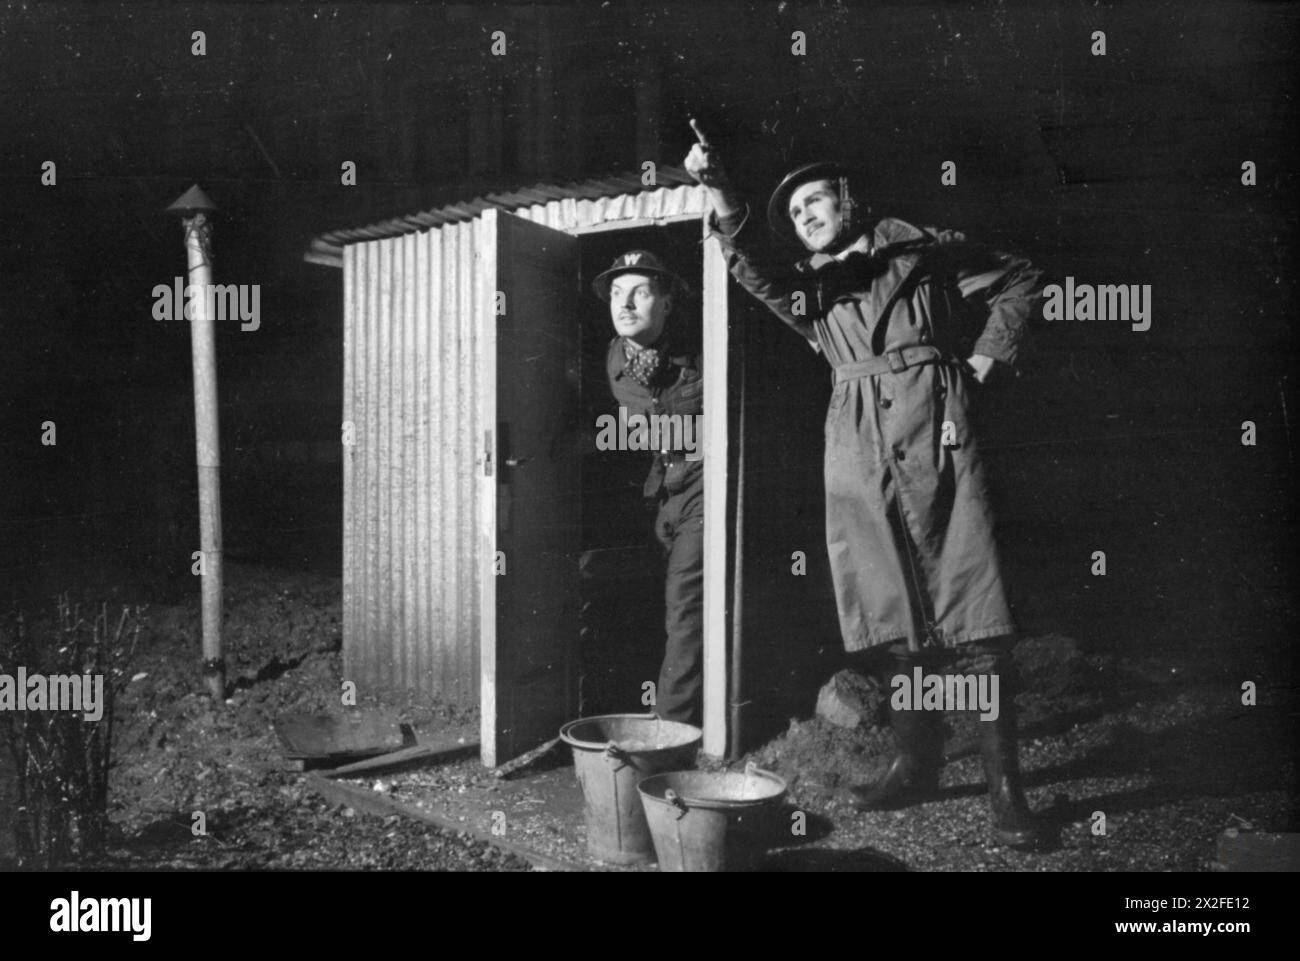 LONDON AFS: MÄNNER DER HILFSFEUERWEHR IN LONDON, C 1940 - zwei Air RAID Vorkehrungen Wardens stehen an ihrem ARP-Posten. Ein Wächter befindet sich direkt in der Wellblechhütte (die über einem Betonschacht gebaut ist), während der andere Wächter in die Skyline zeigt, nachdem er ein Feuer entdeckt hat Stockfoto